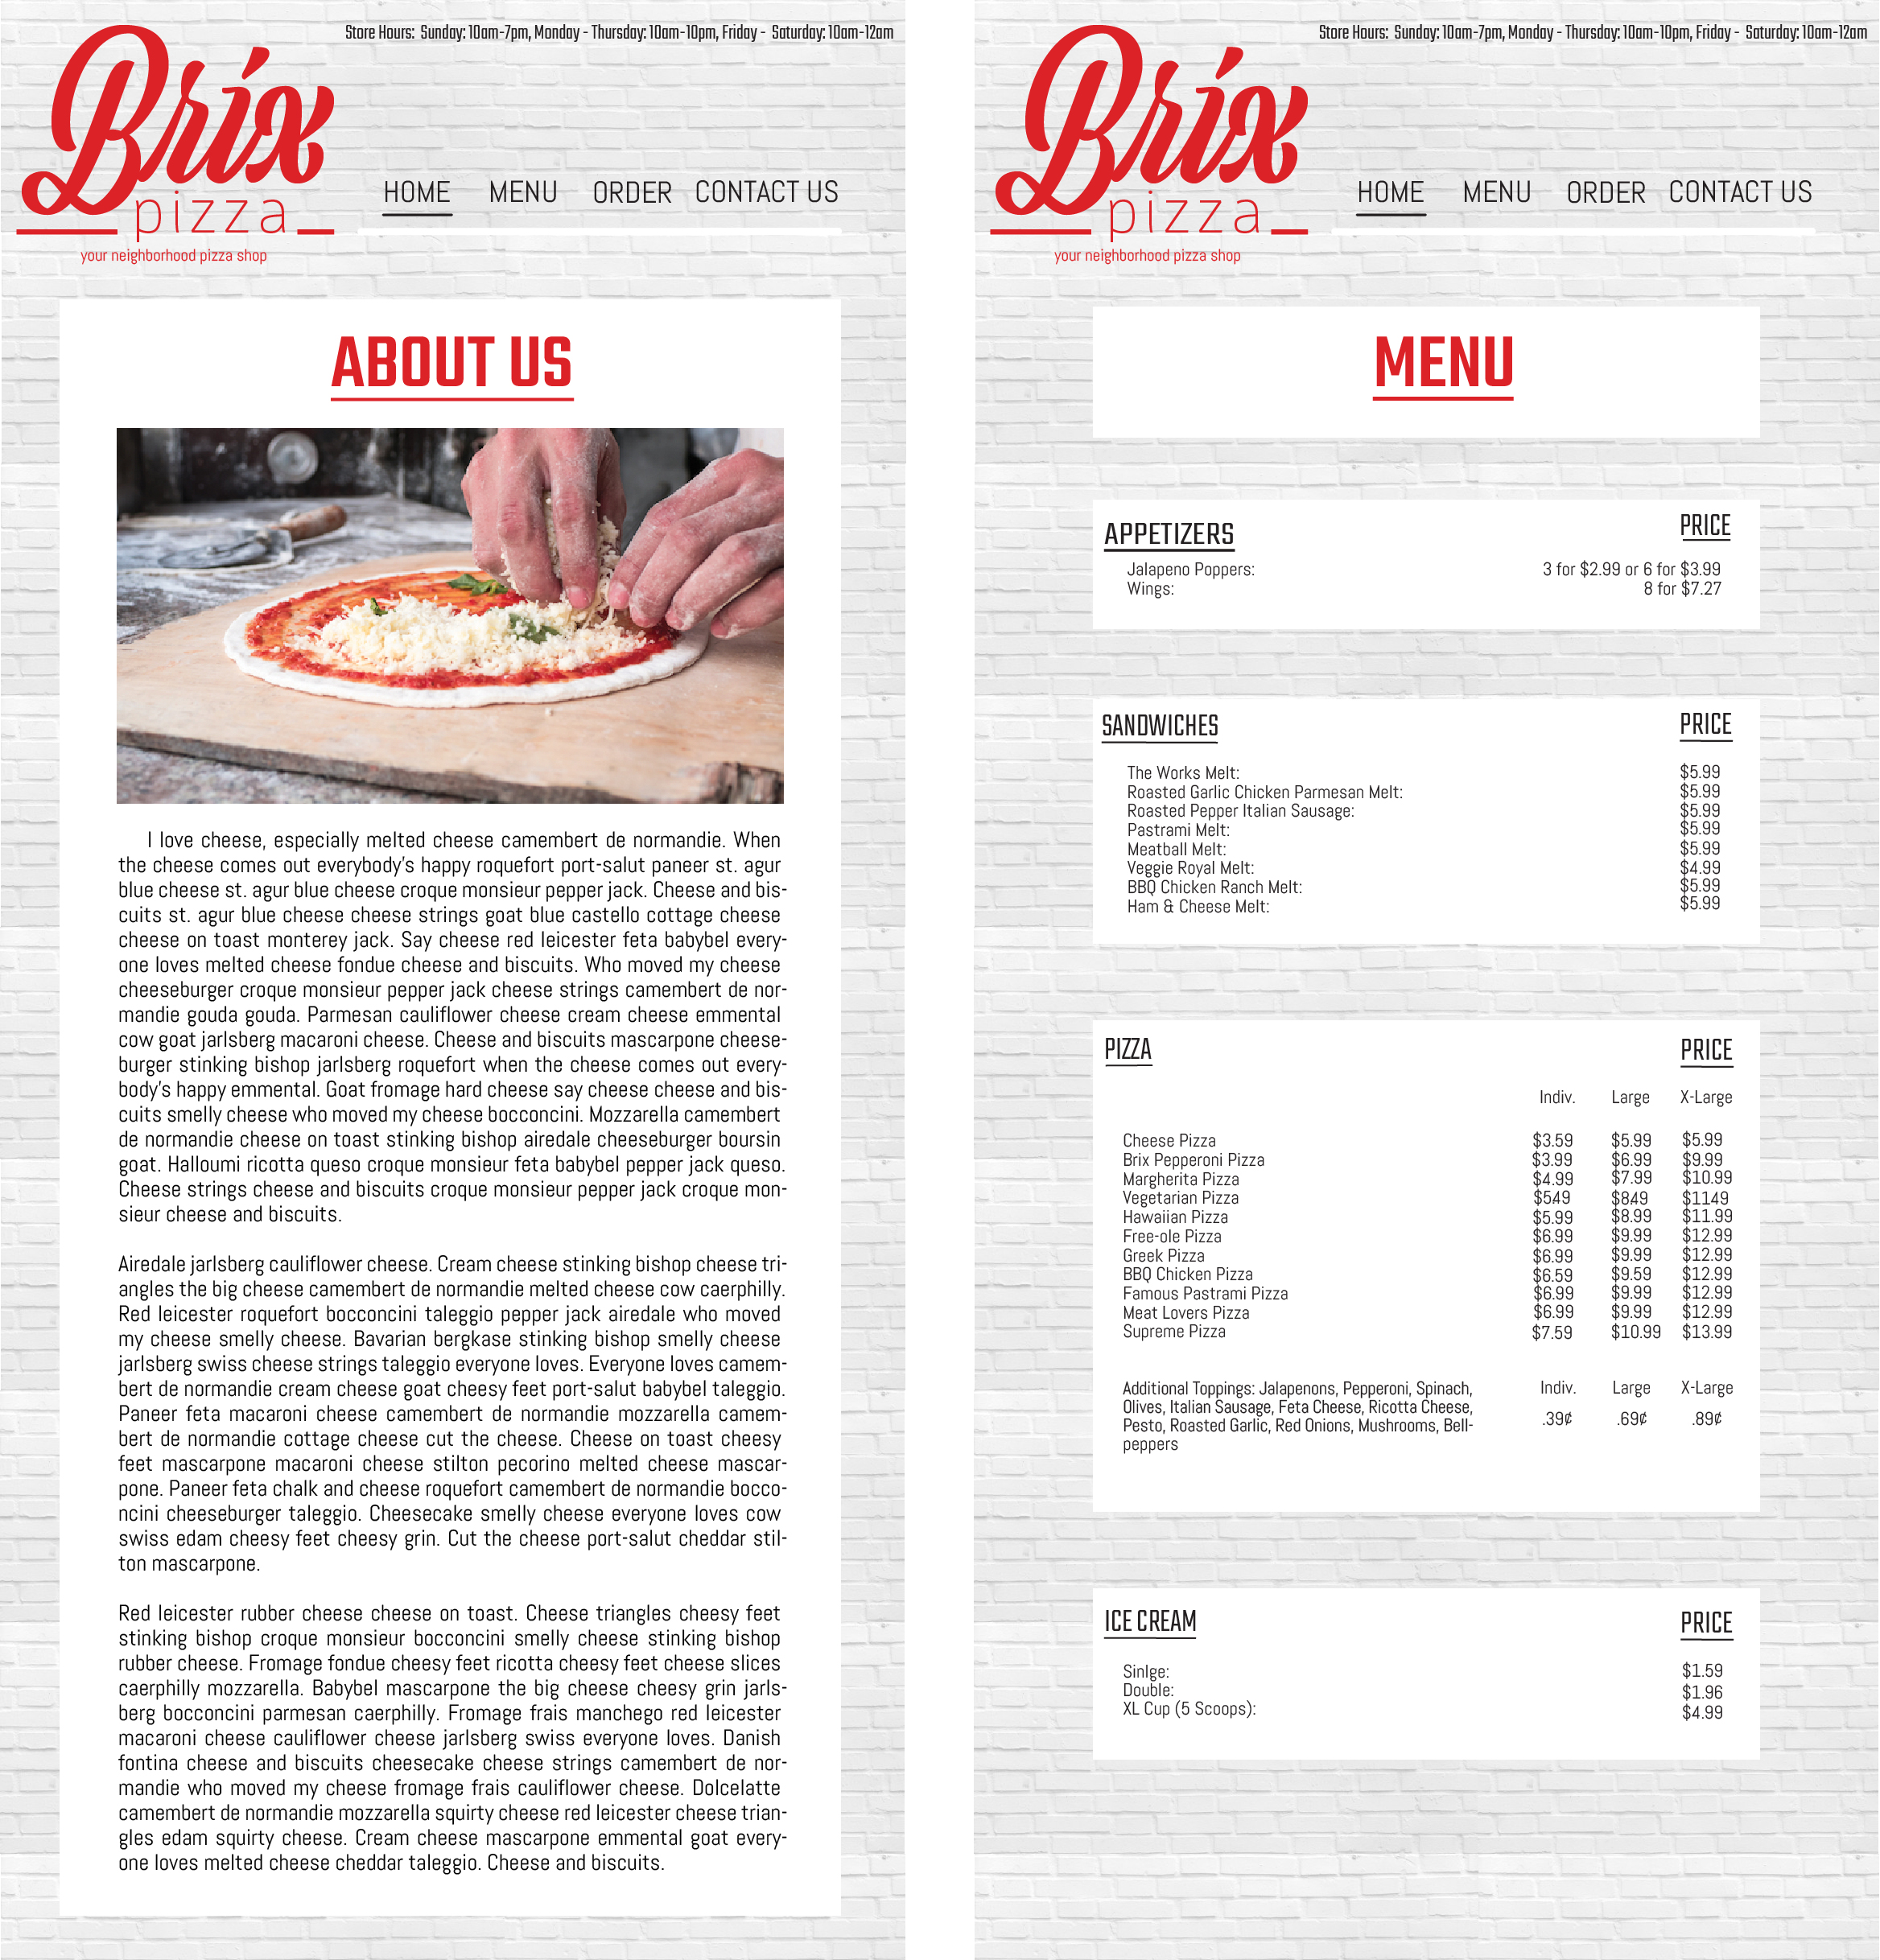 Homepage/Menu for Brix via mobile